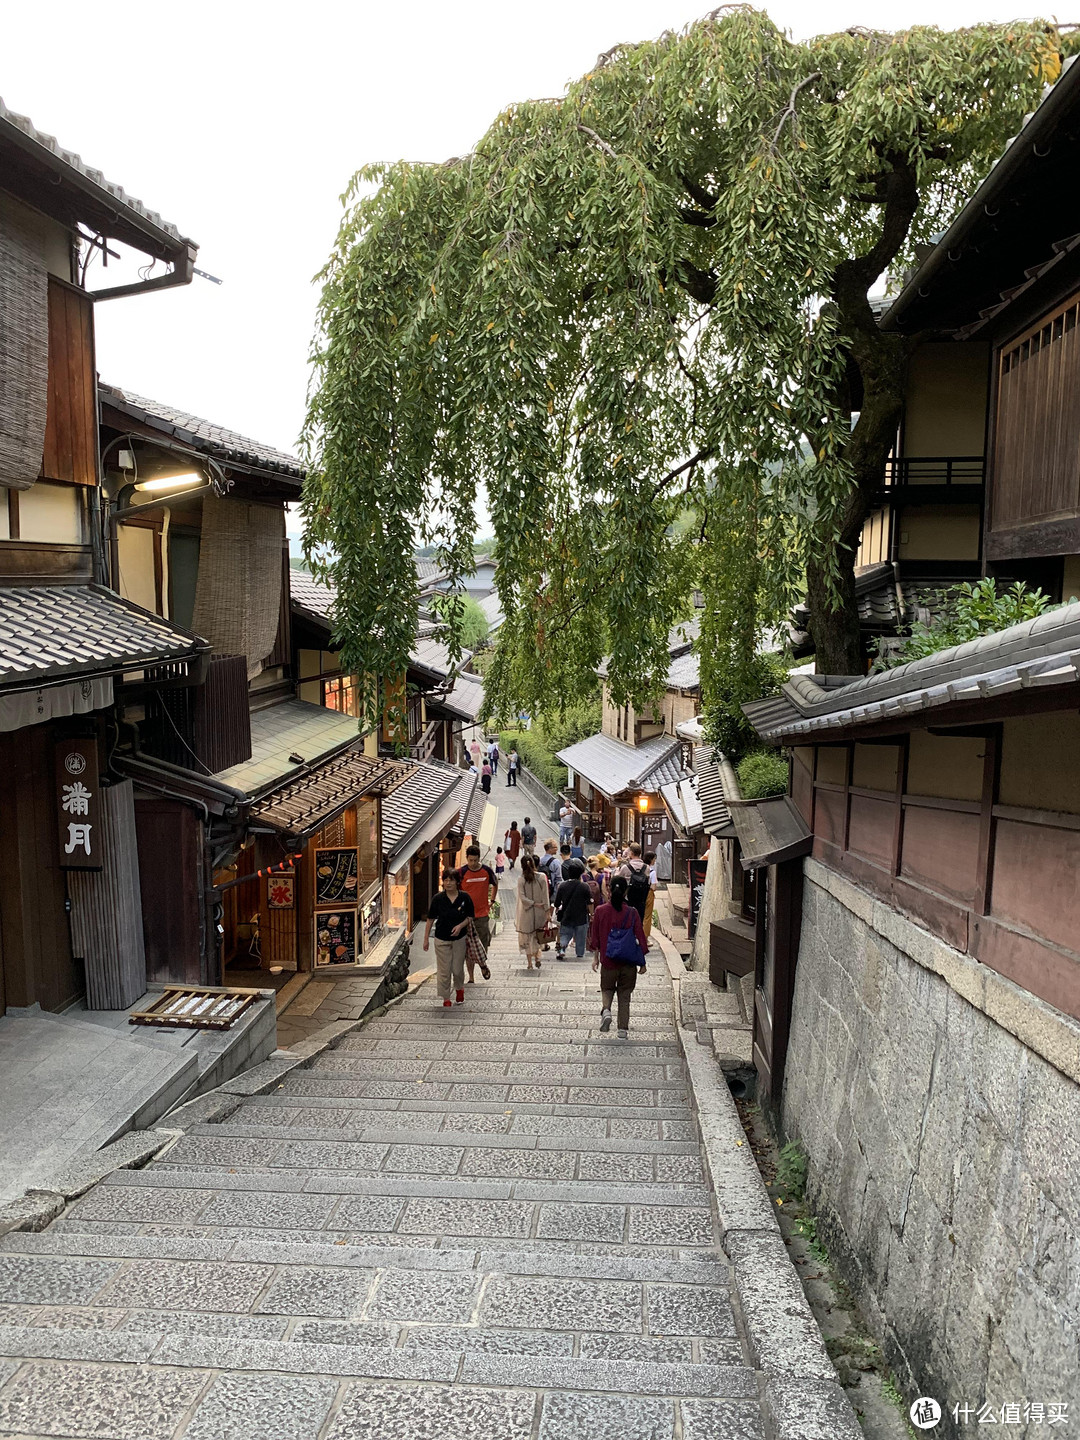 一个人也可以走遍世界的日本关西之旅 - 京都篇